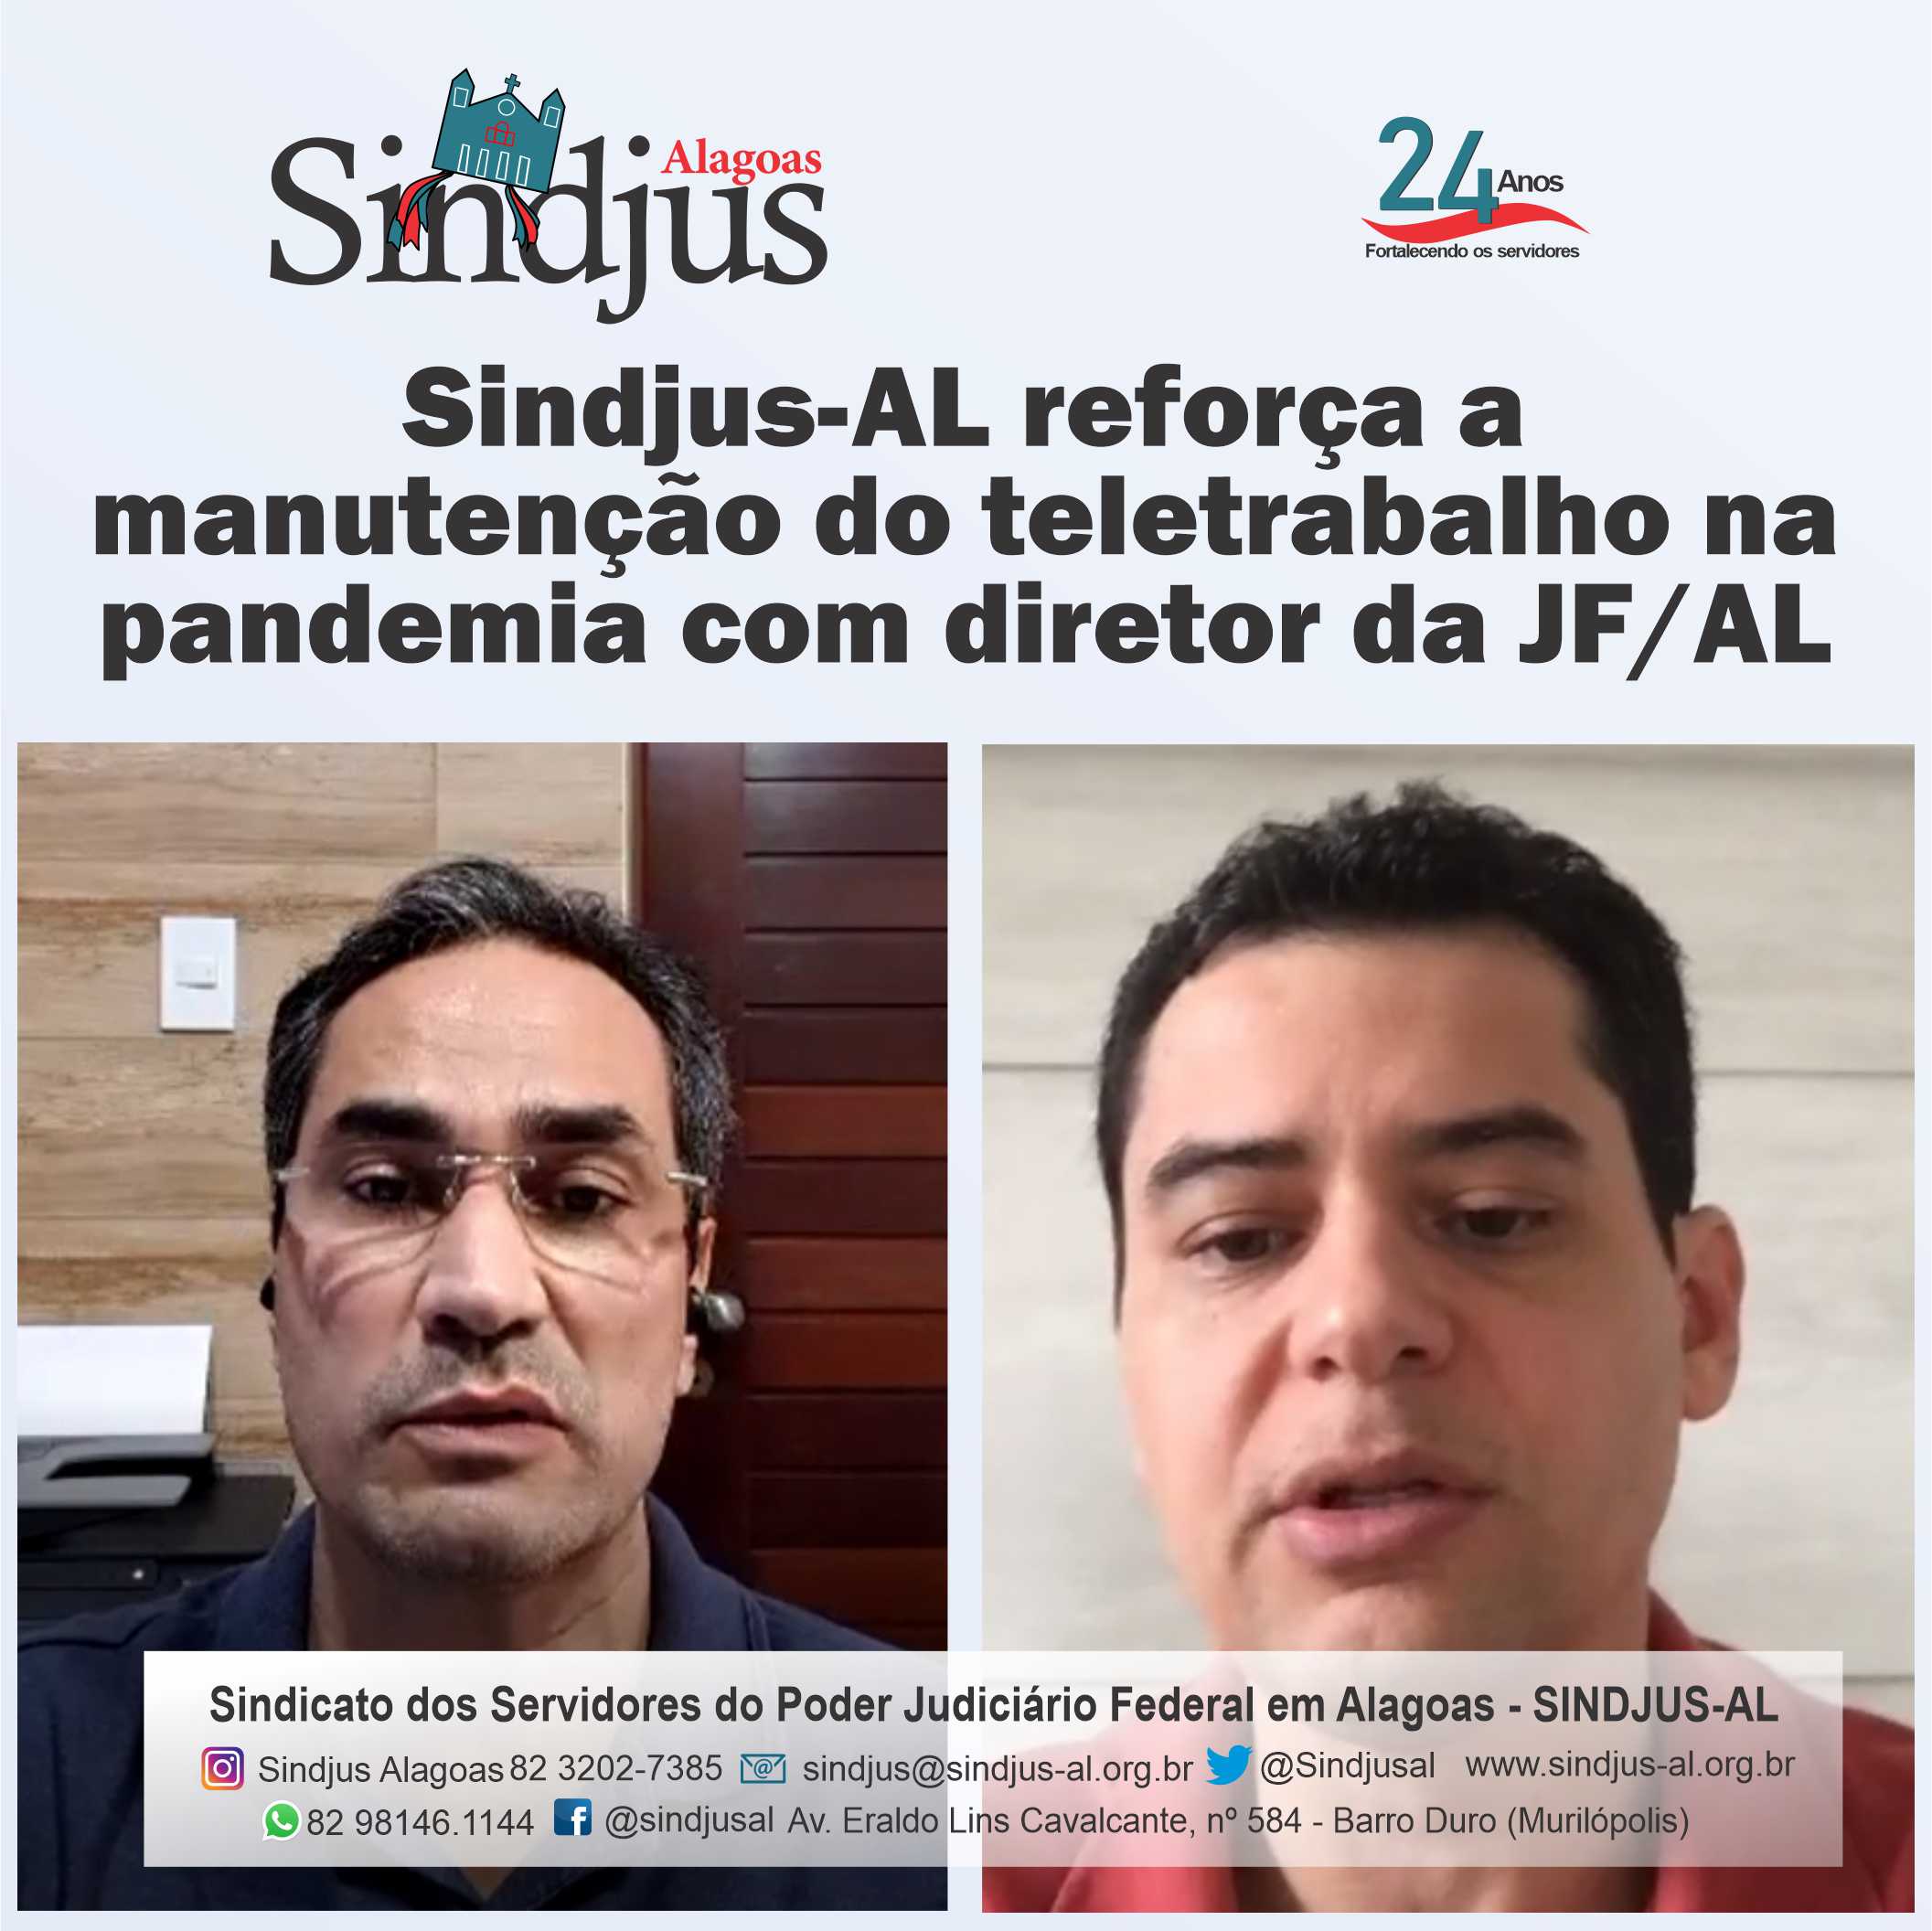 Sindjus-AL reforça a manutenção do teletrabalho na pandemia com diretor da JF/AL